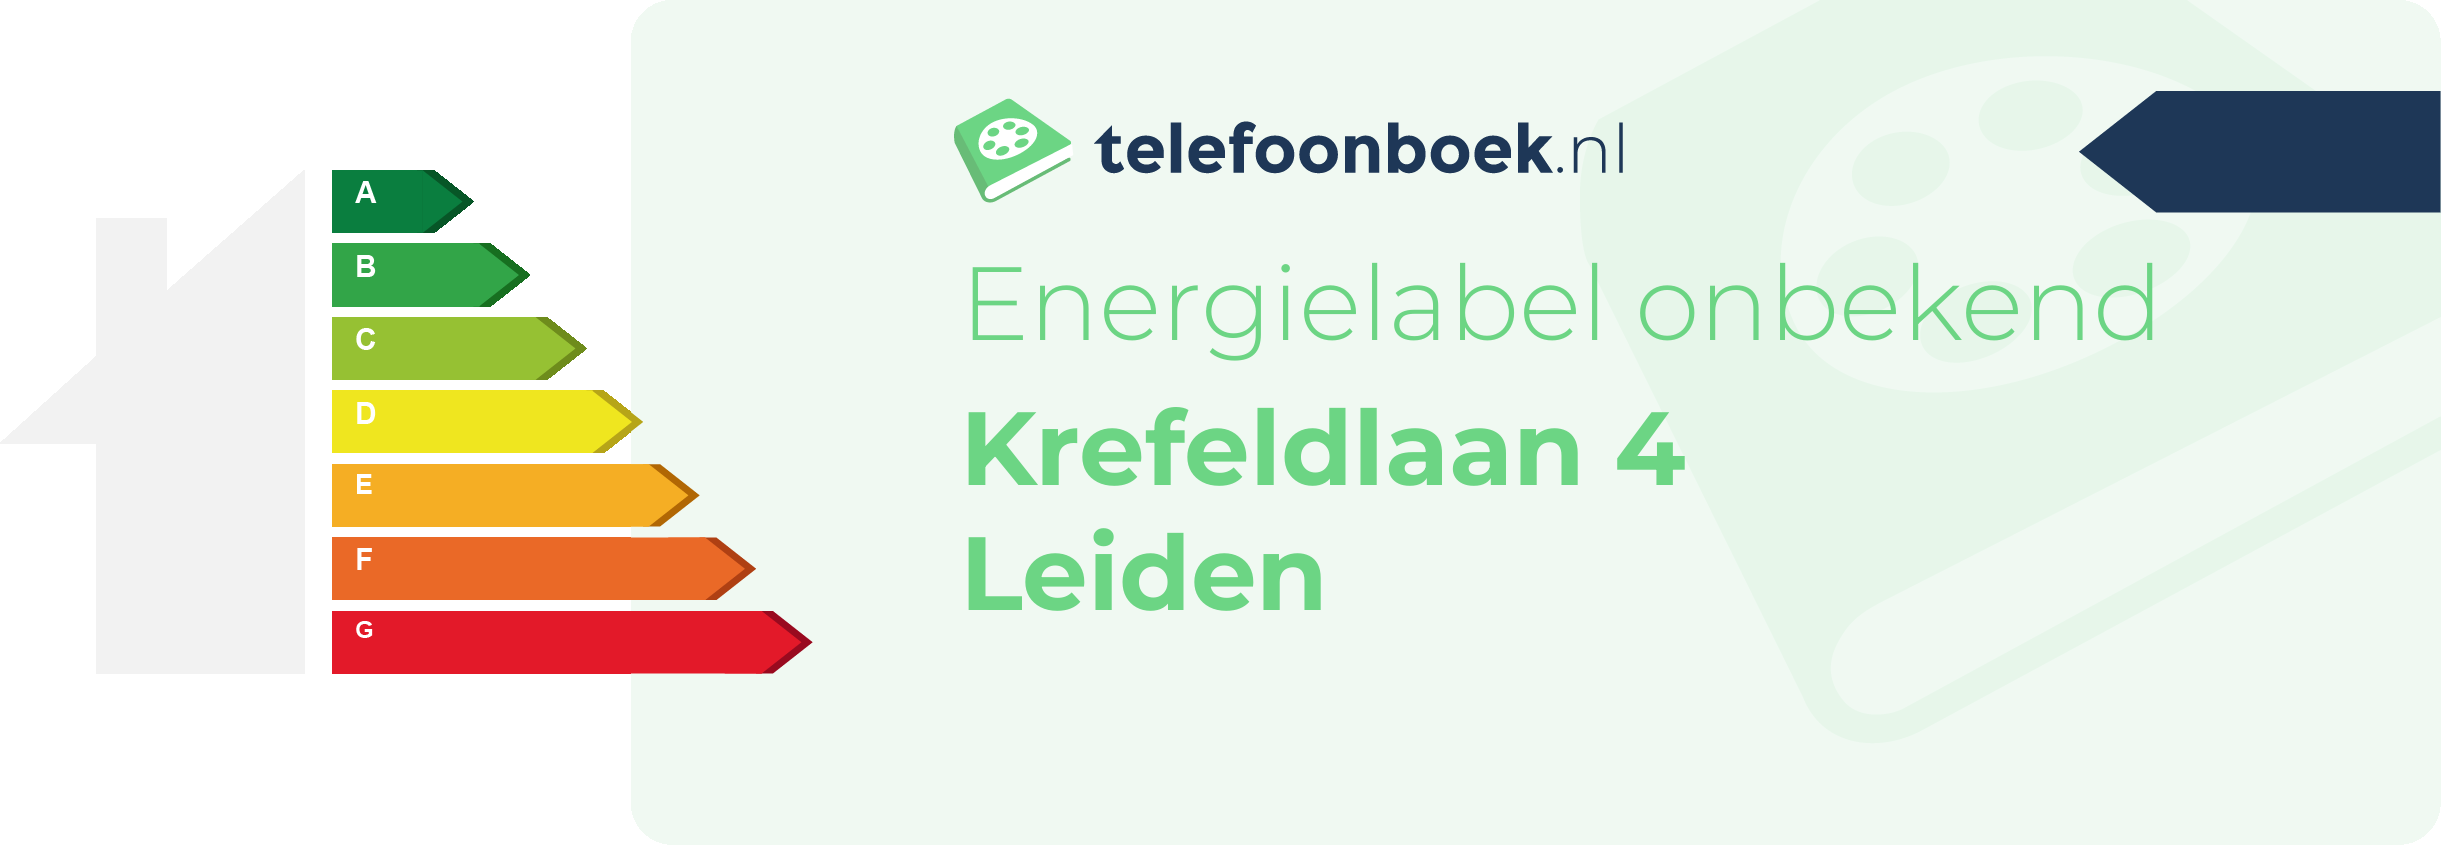 Energielabel Krefeldlaan 4 Leiden